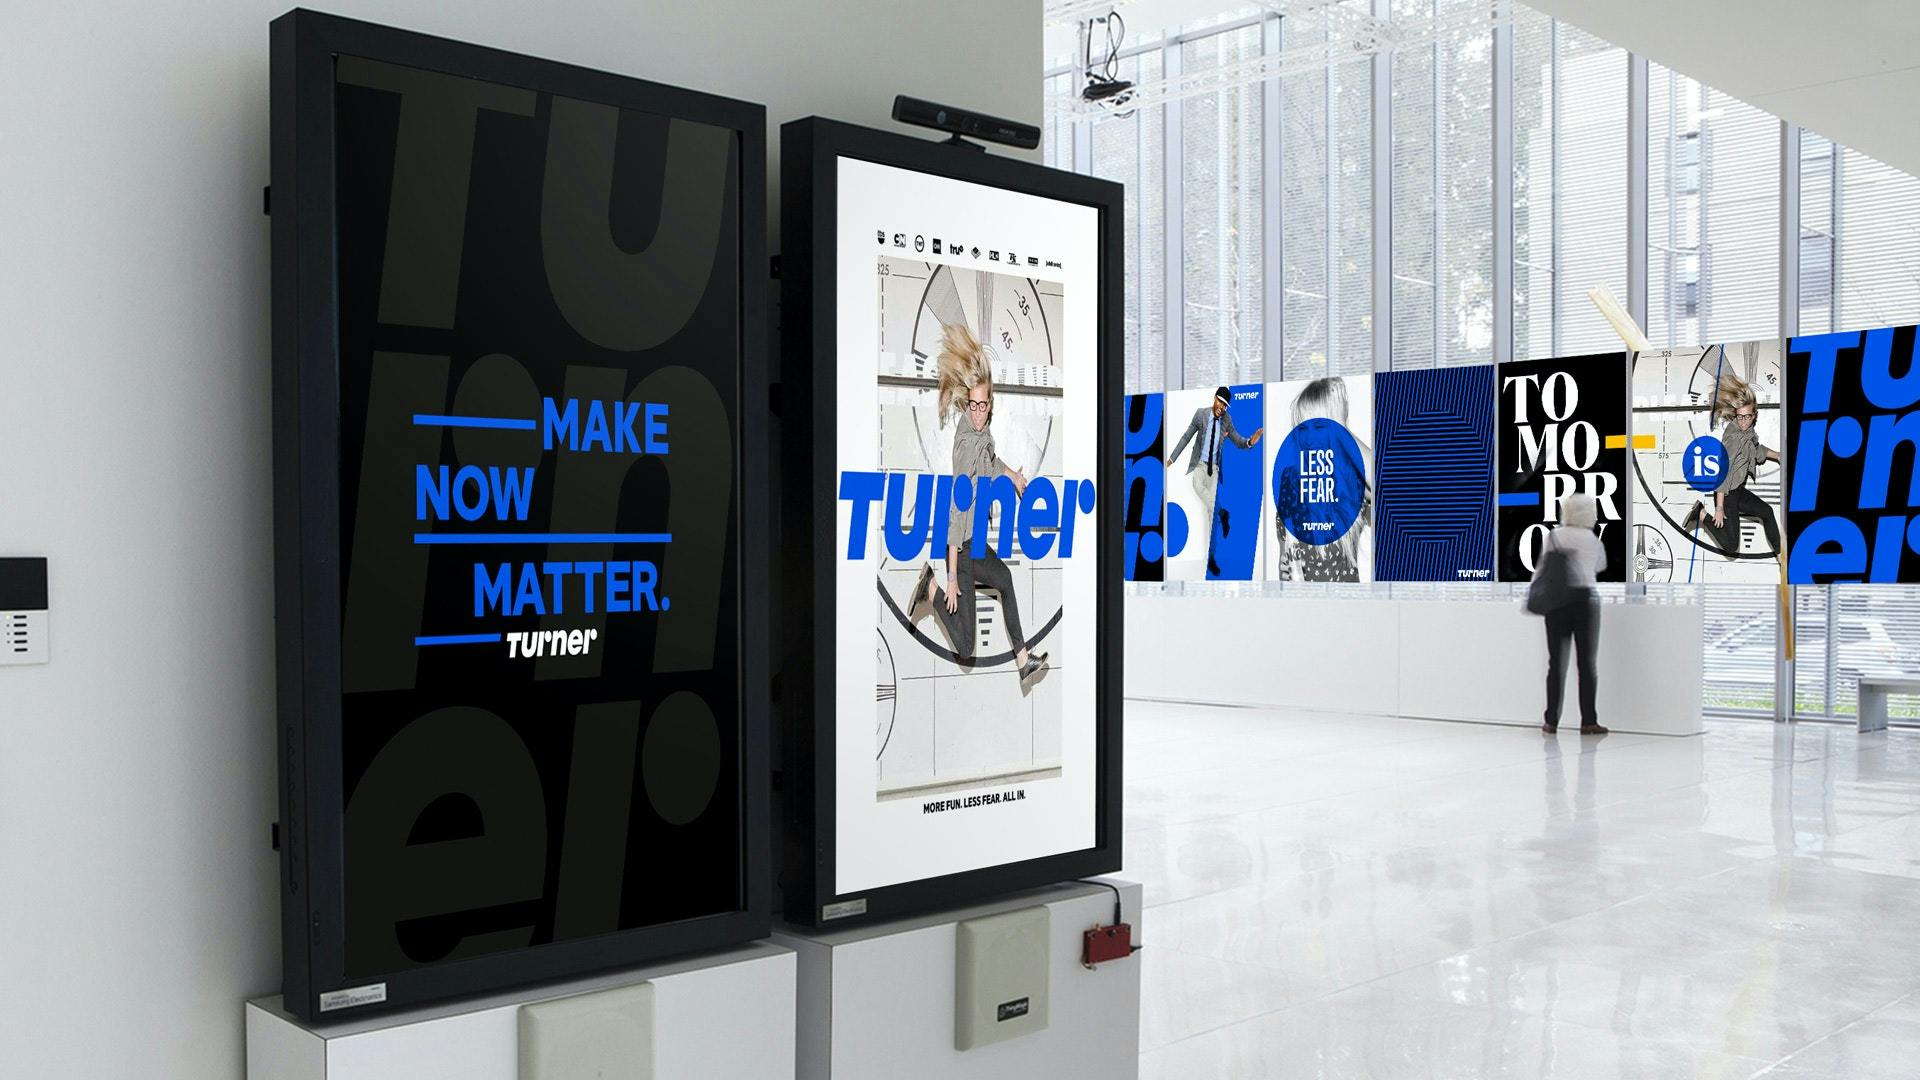 Turner ads in situ in an airport